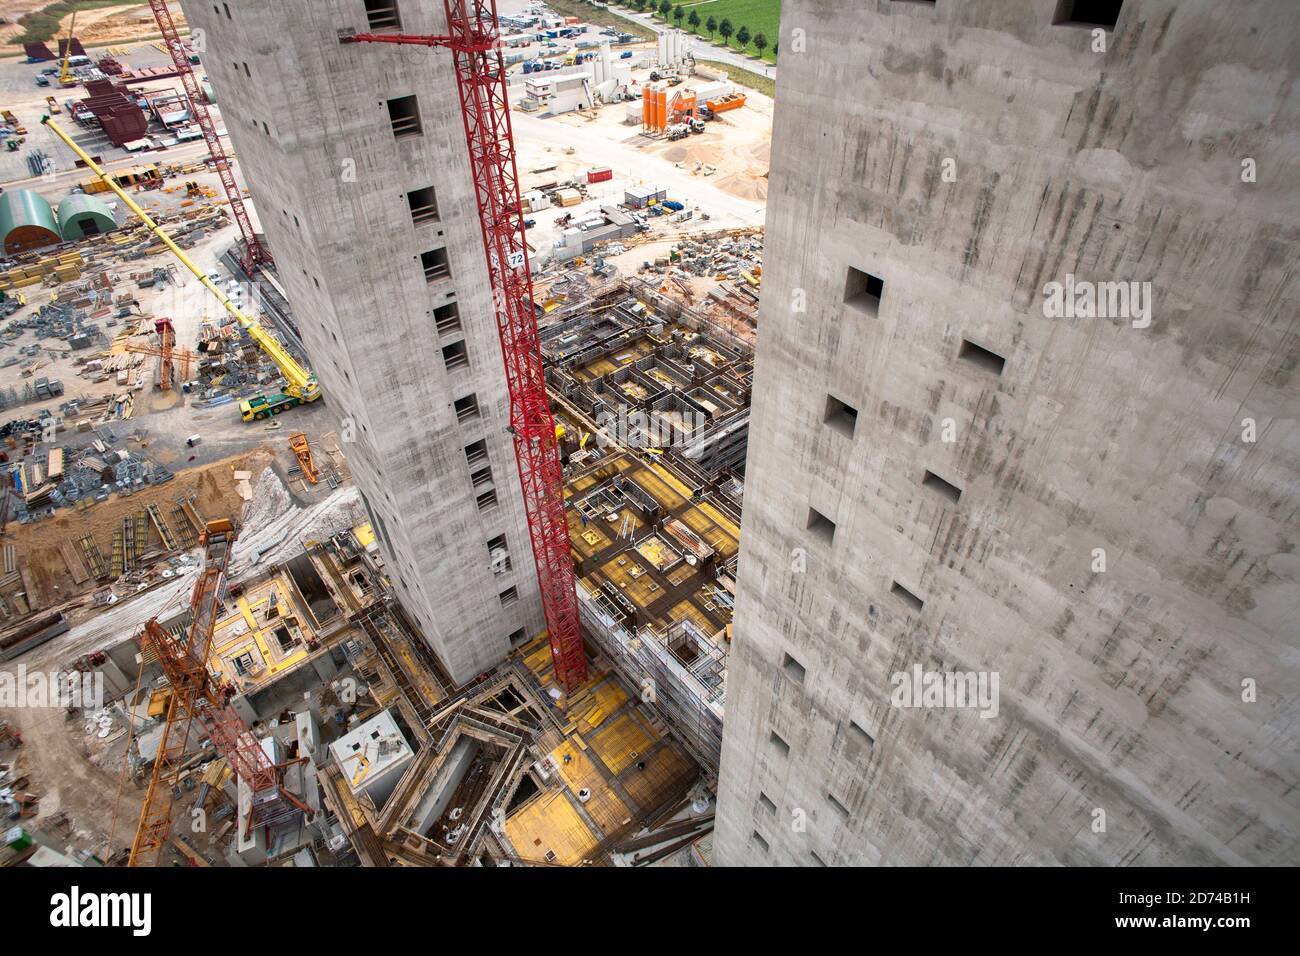 Cantiere della nuova centrale a lignite Neurath, nei pressi di Grevenbroich, Boa 2/3, le scale alte 200 metri delle future caldaie; Foto Stock